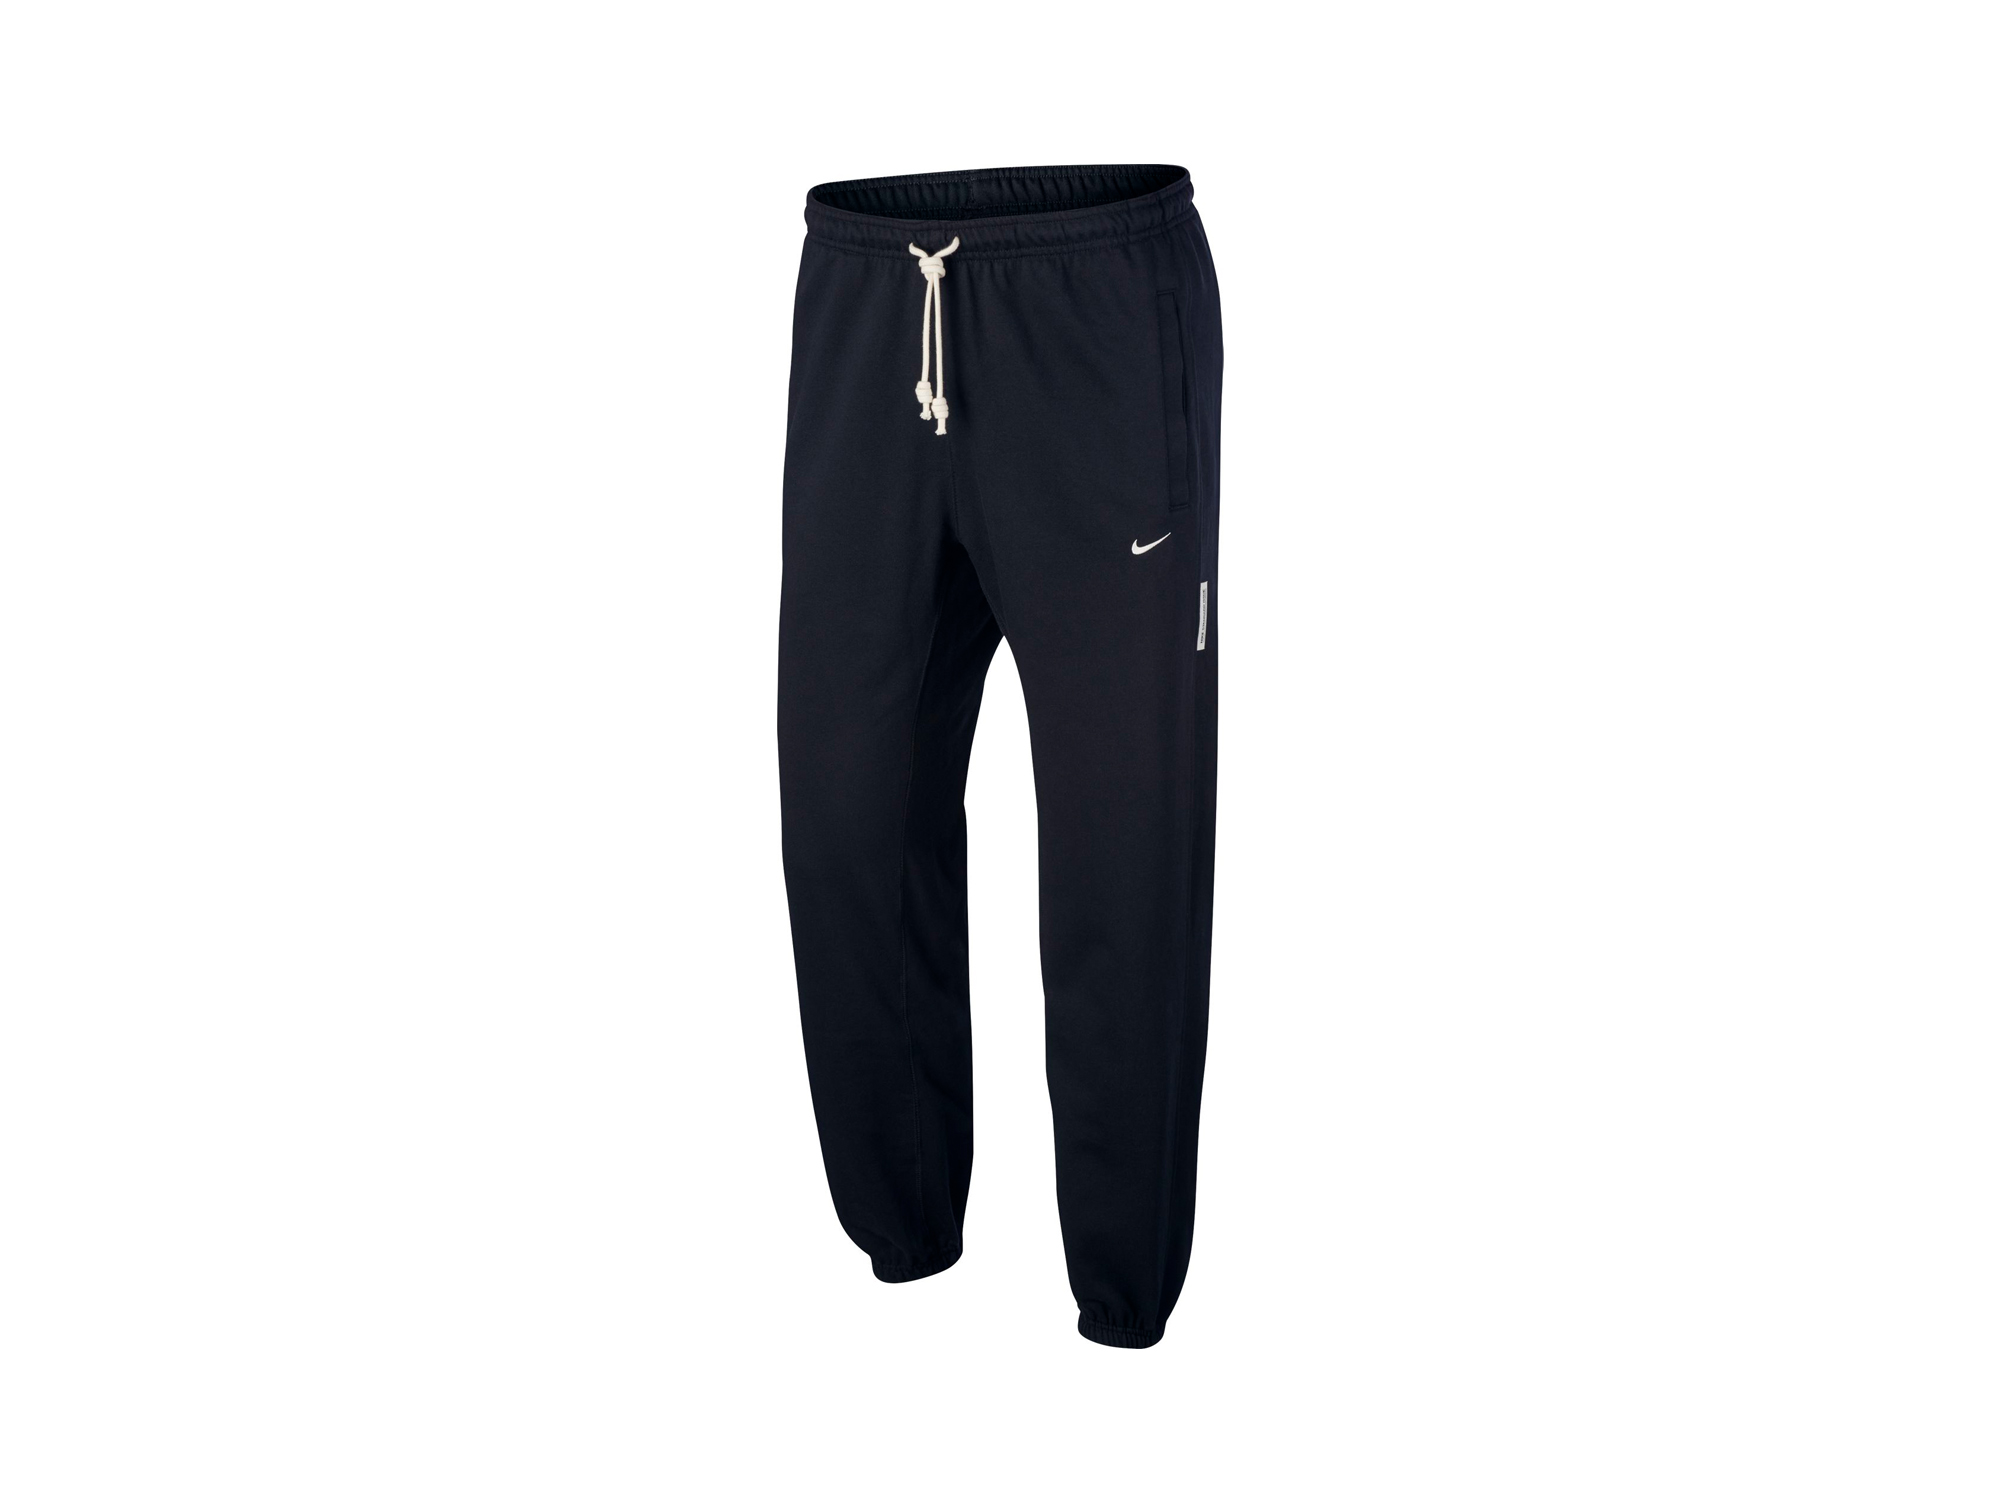 Nike Dri-Fit Standard Issue Pants